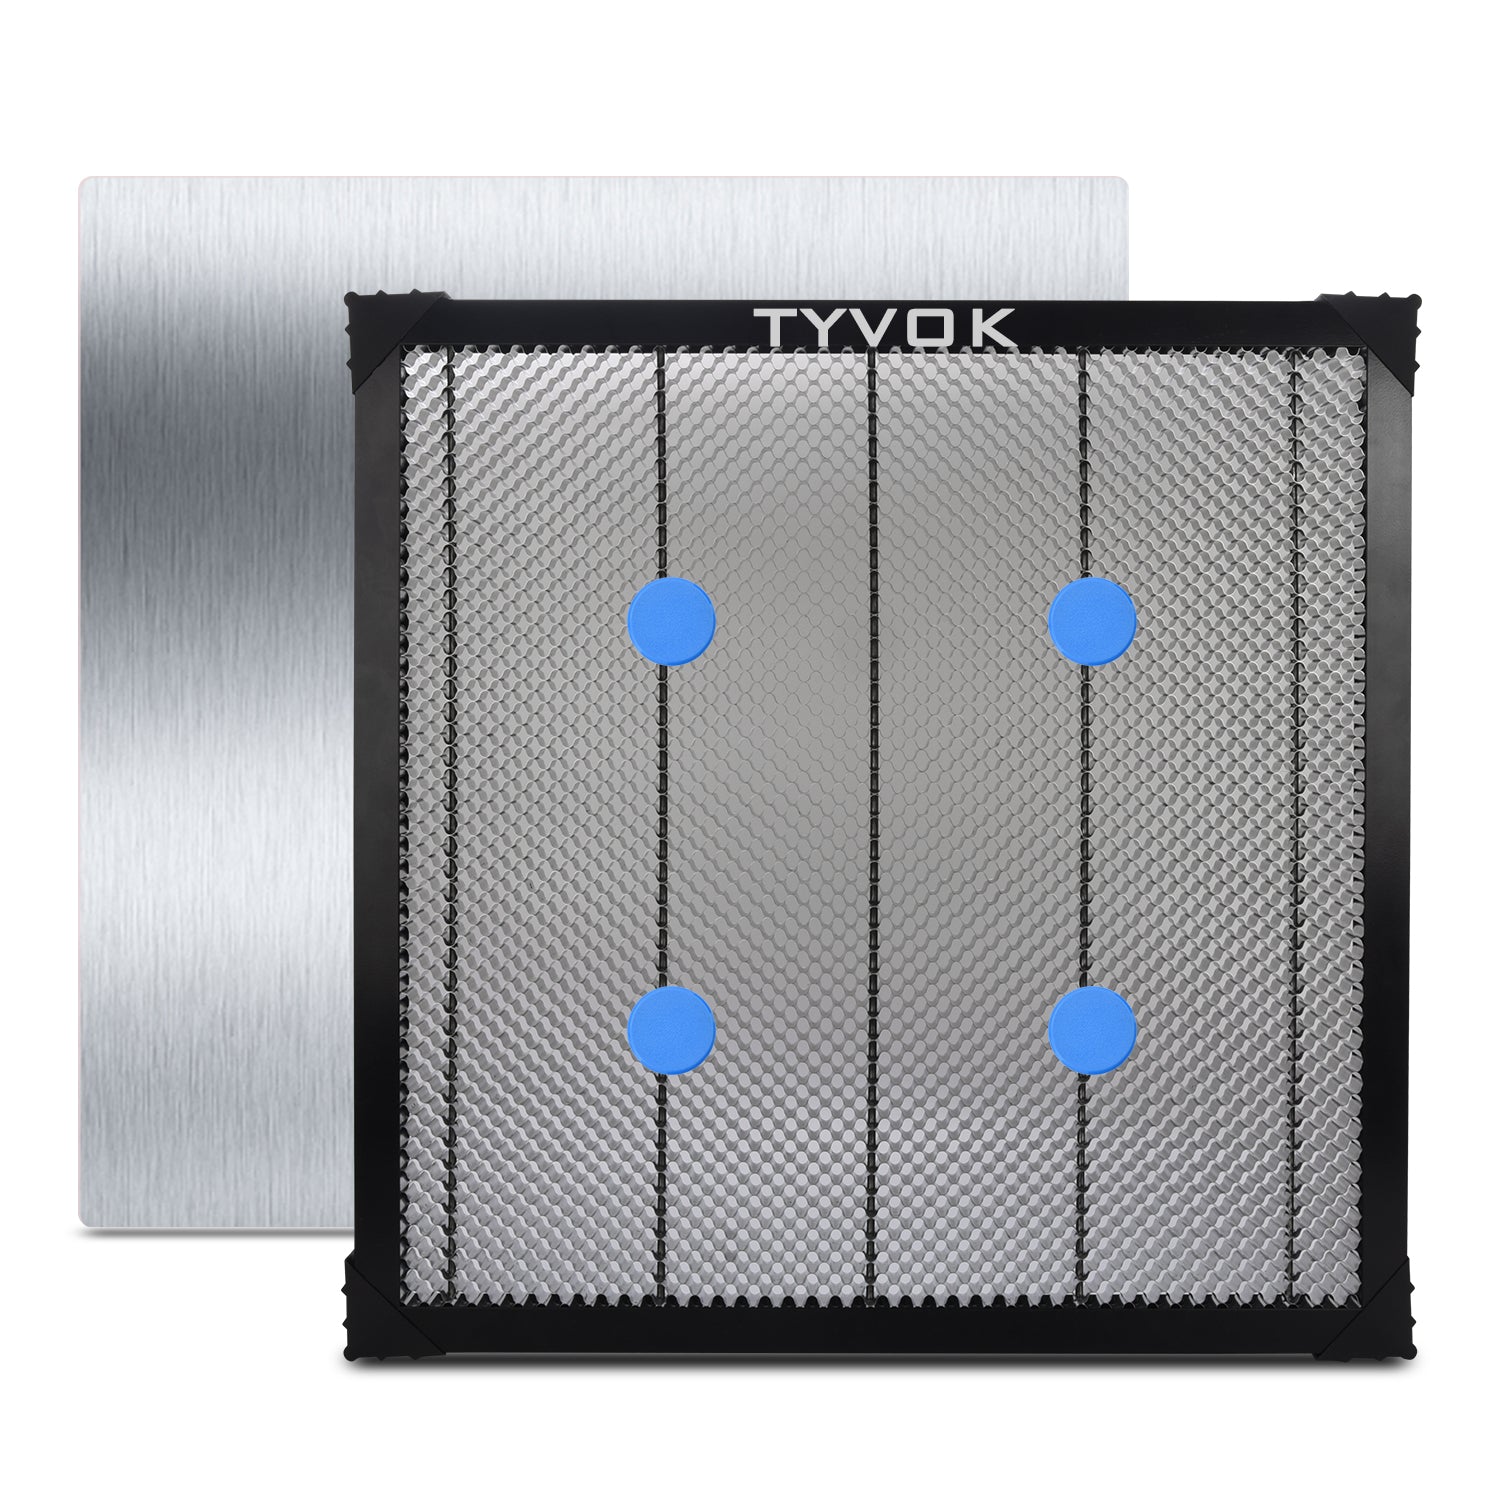 Tyvok - 500*500mm Honeycomb Laser Bed for Spider X1 - Spider-Laser 